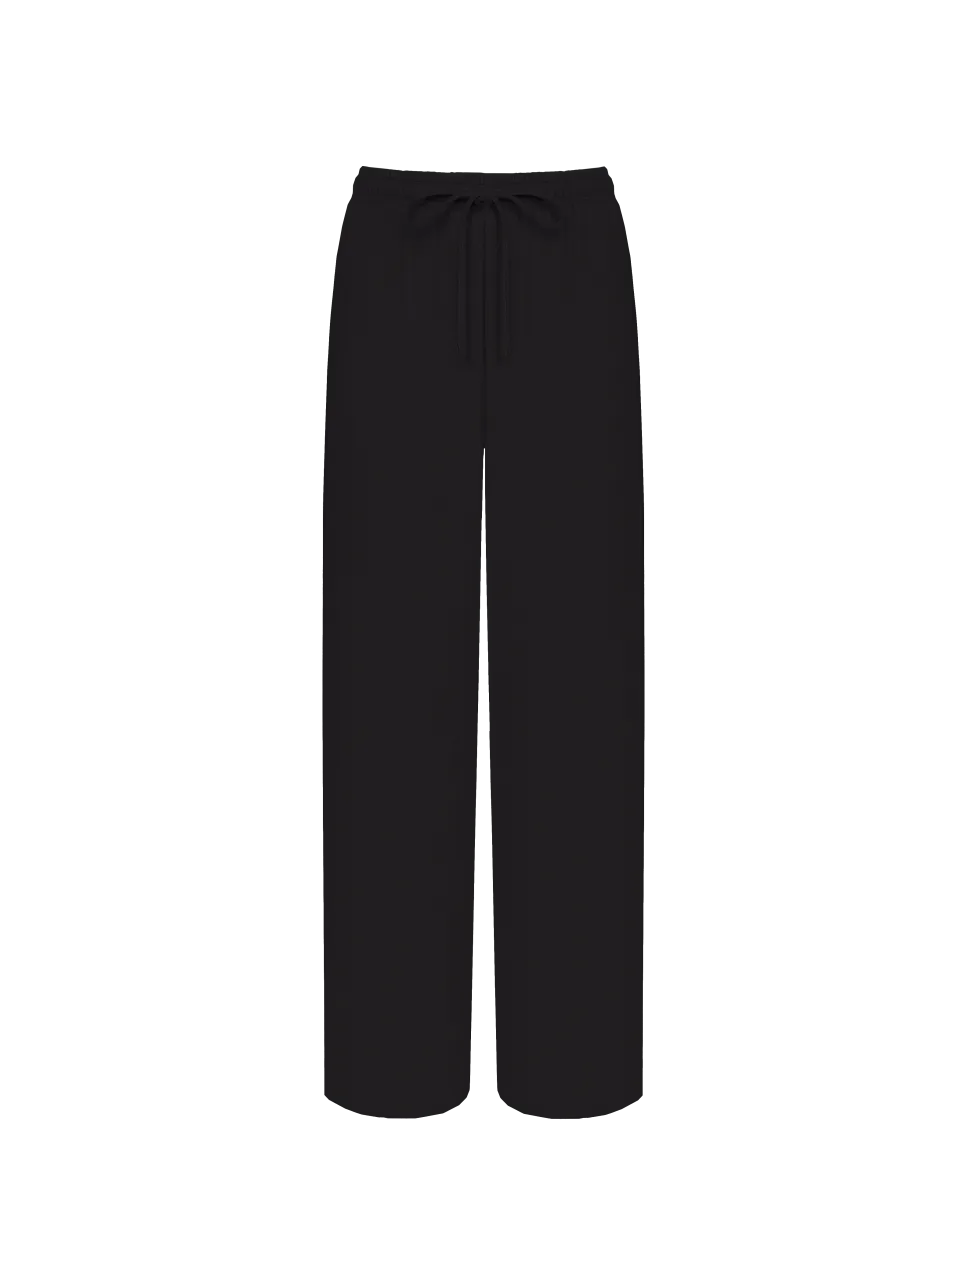 Женские брюки Stimma Бенуа, цвет - черный